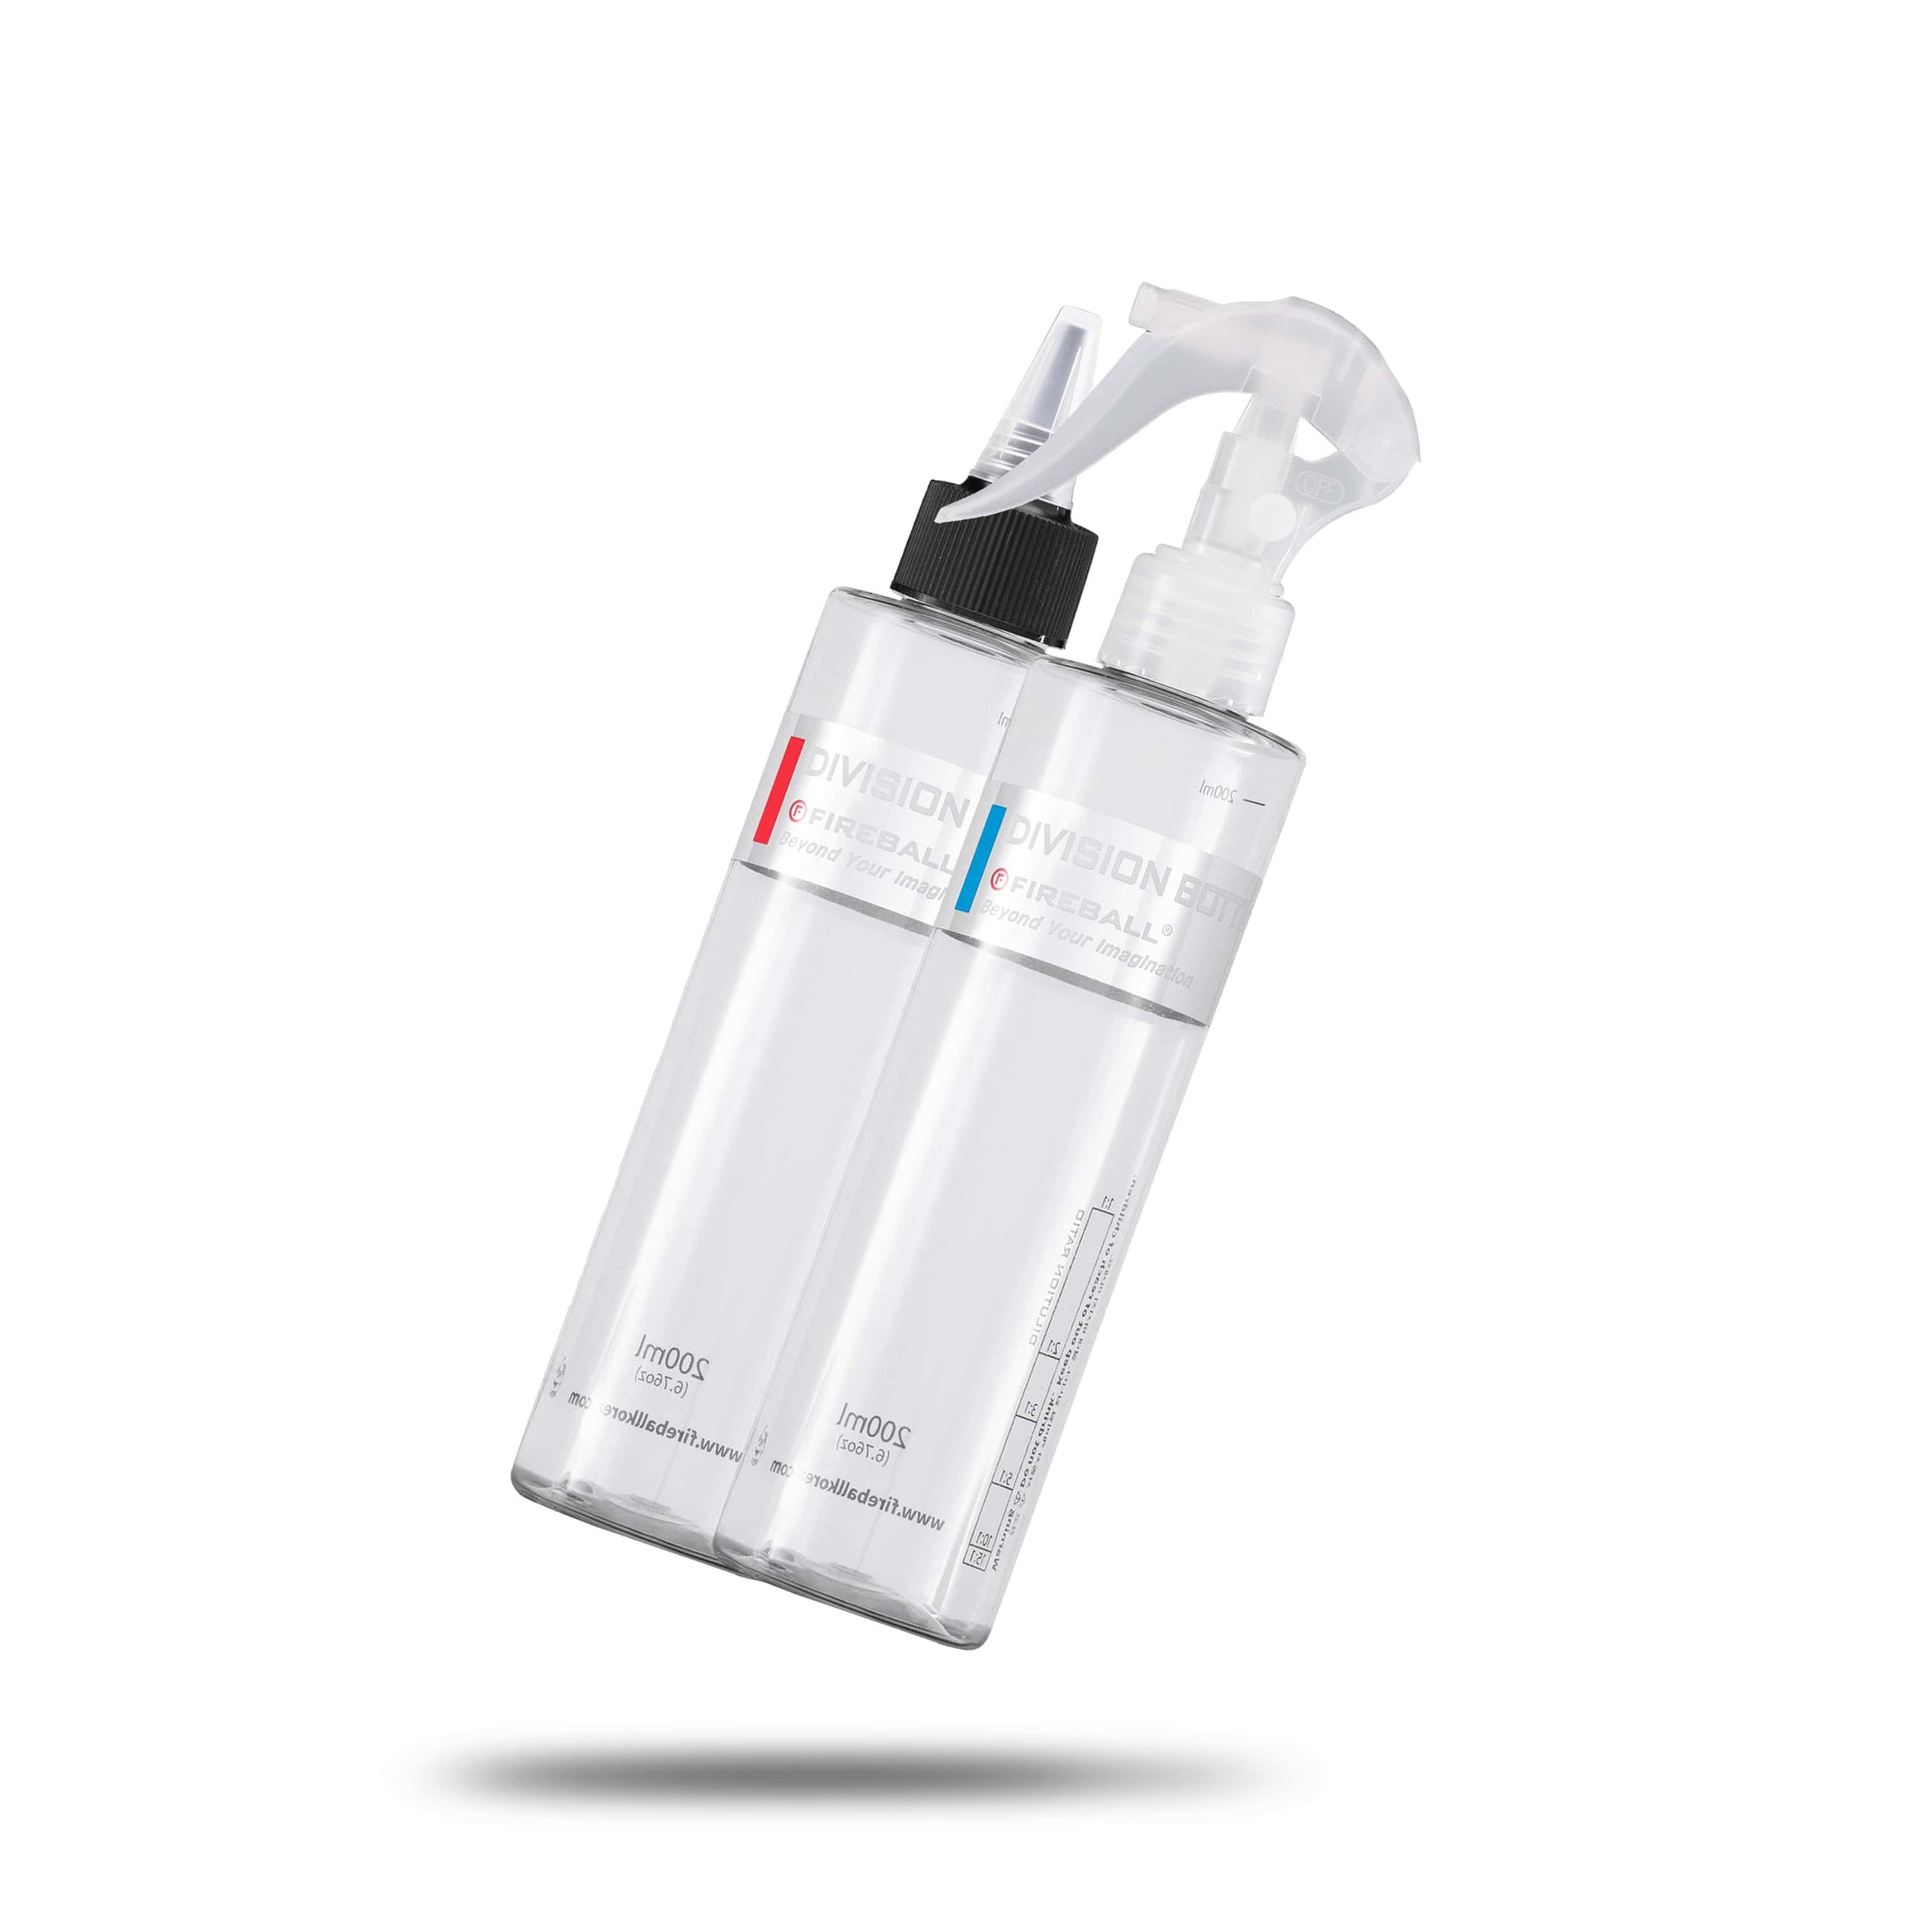 Fireball Division Bottle - Bouteille vide avec Chartes de Dilutions 200mL